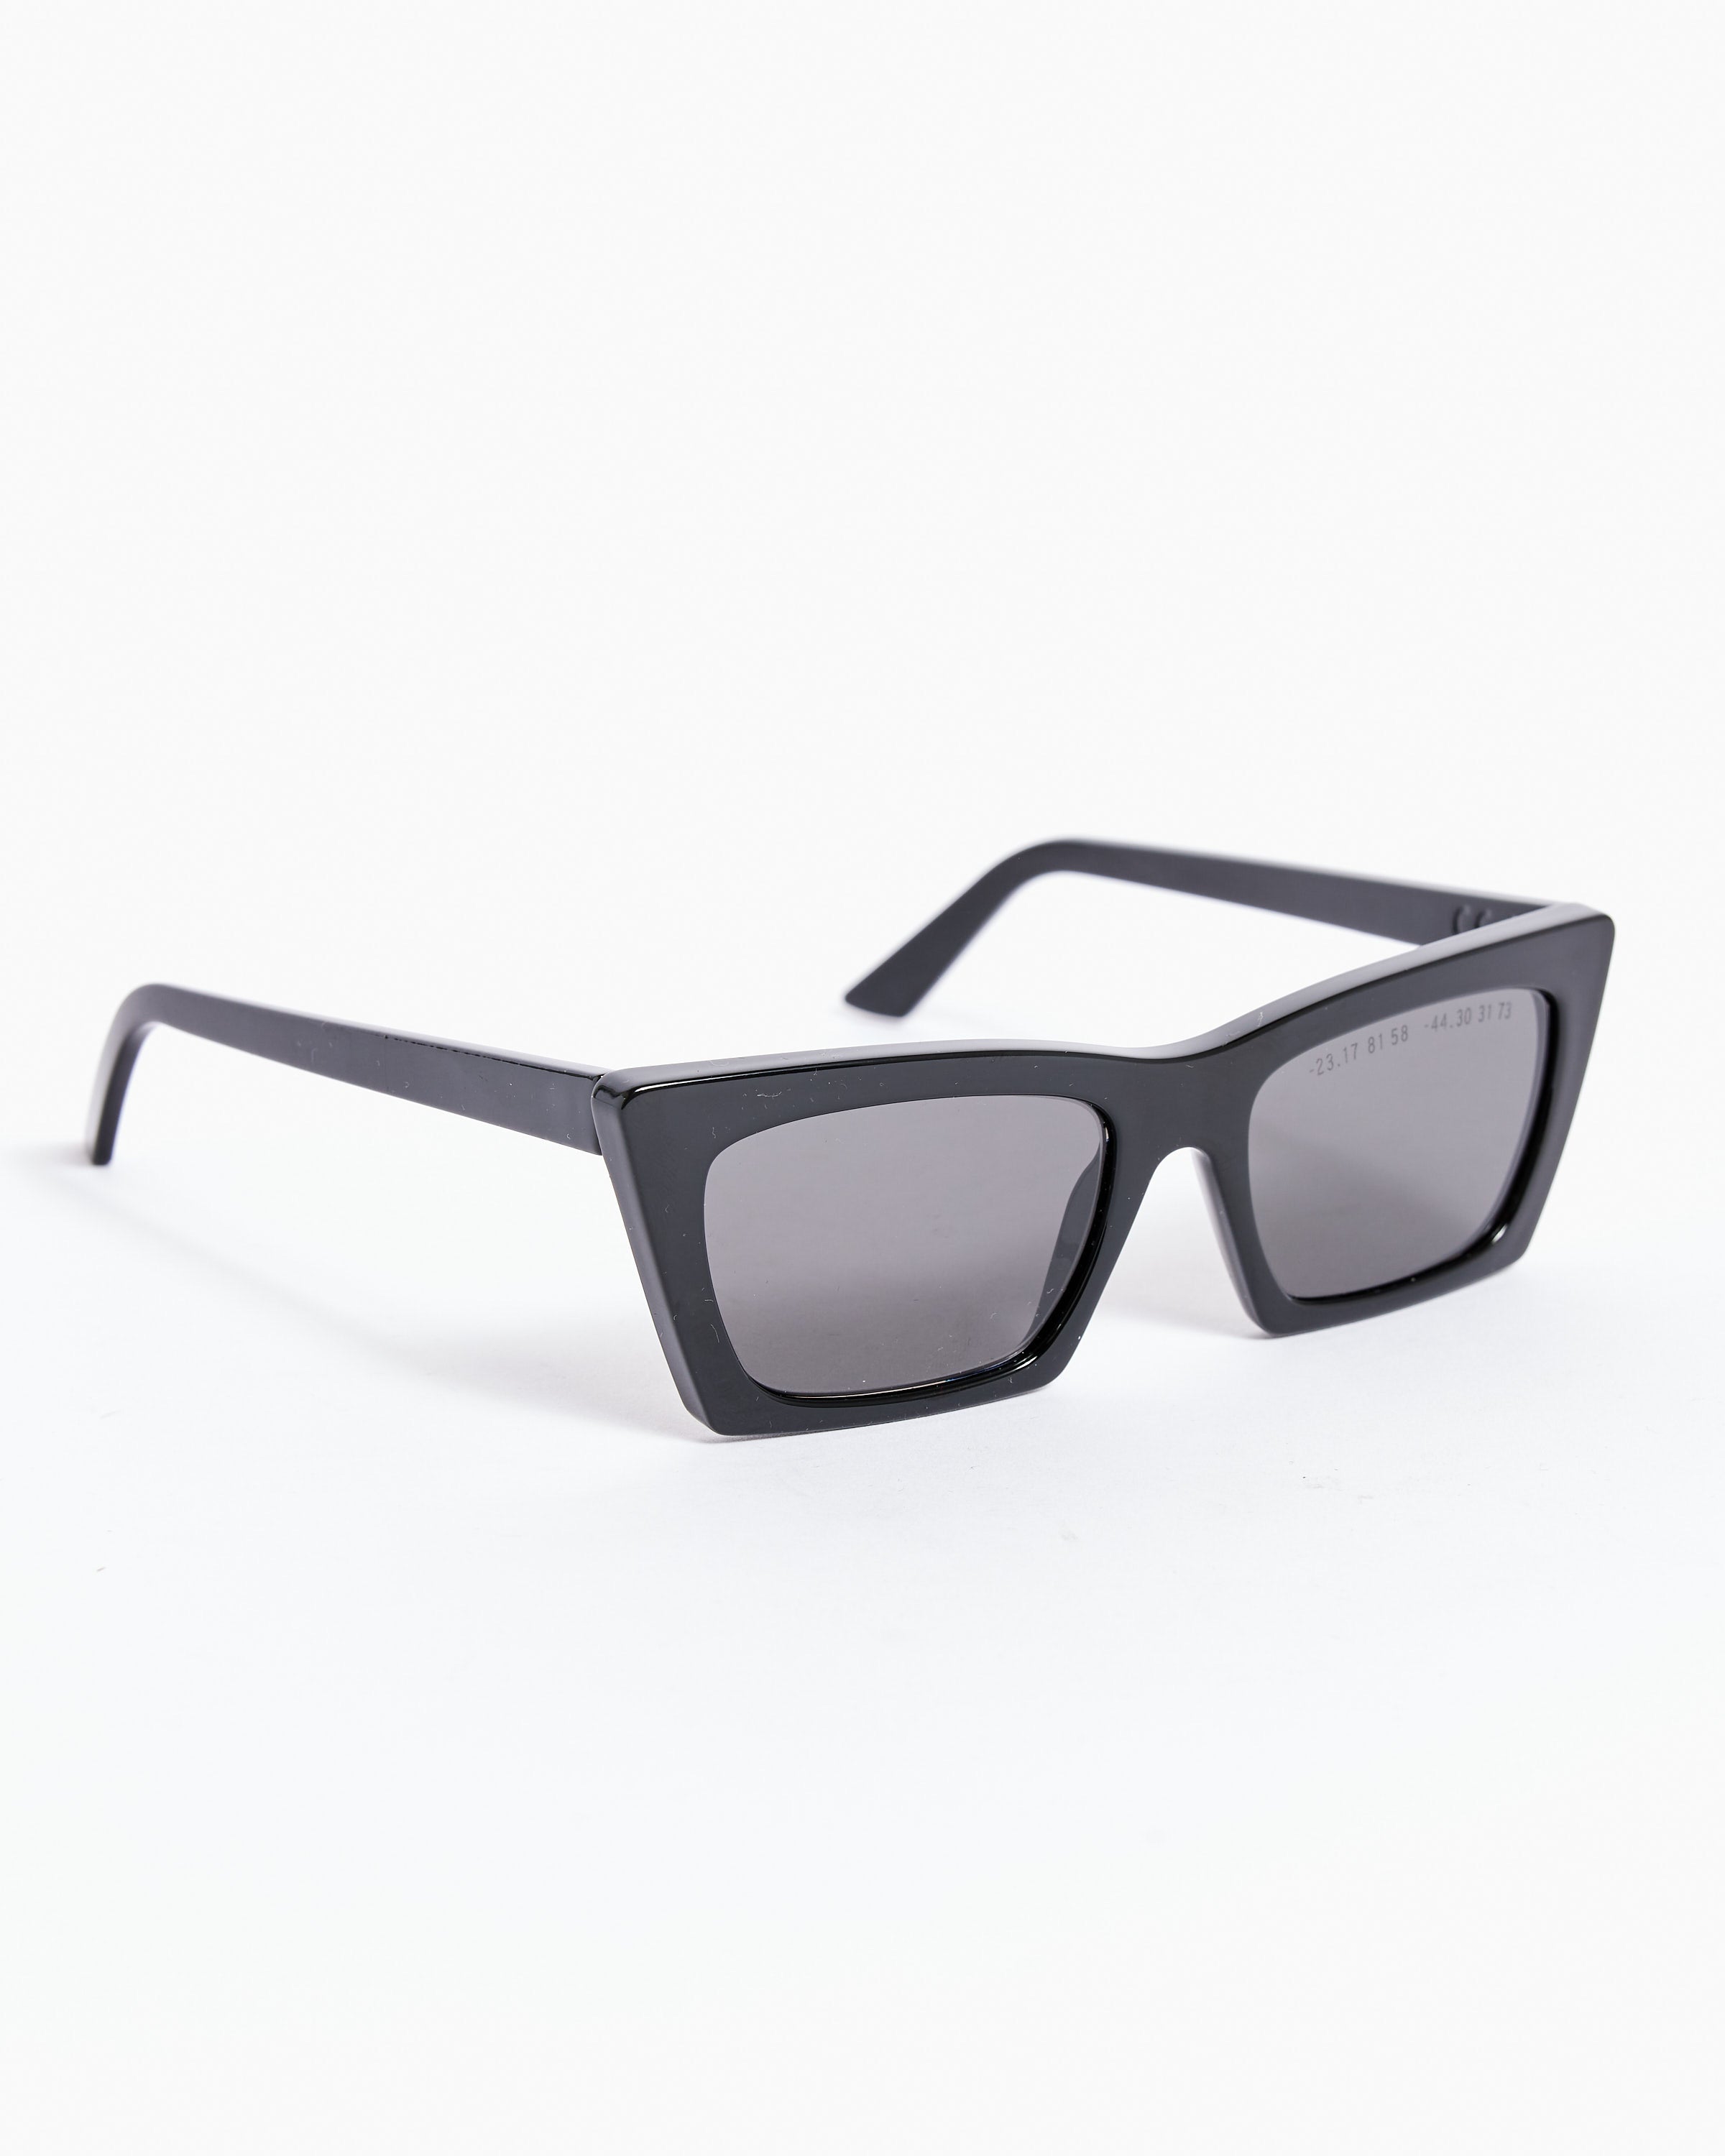 Type 04 Cateye Sunglasses